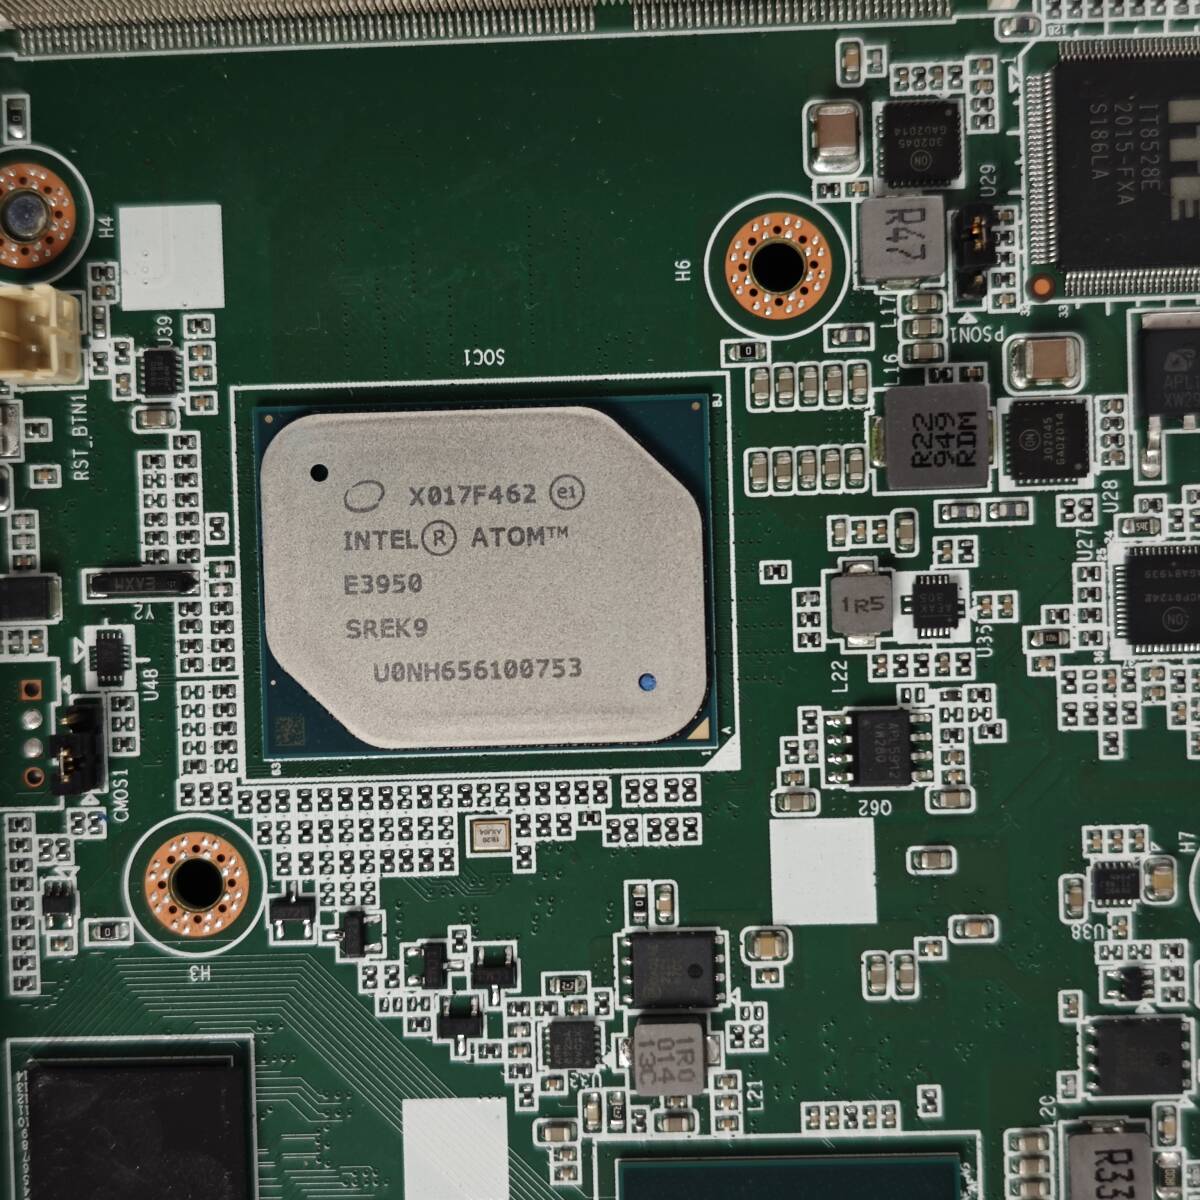 ADVANTECH DS-580 Intel E3950 Atom CPU, 8GB DDR3 Memory, 30GB SSD,GeForce 2GB GT1030 миниатюрный вентилятор отсутствует PC рабочее состояние подтверждено C0289